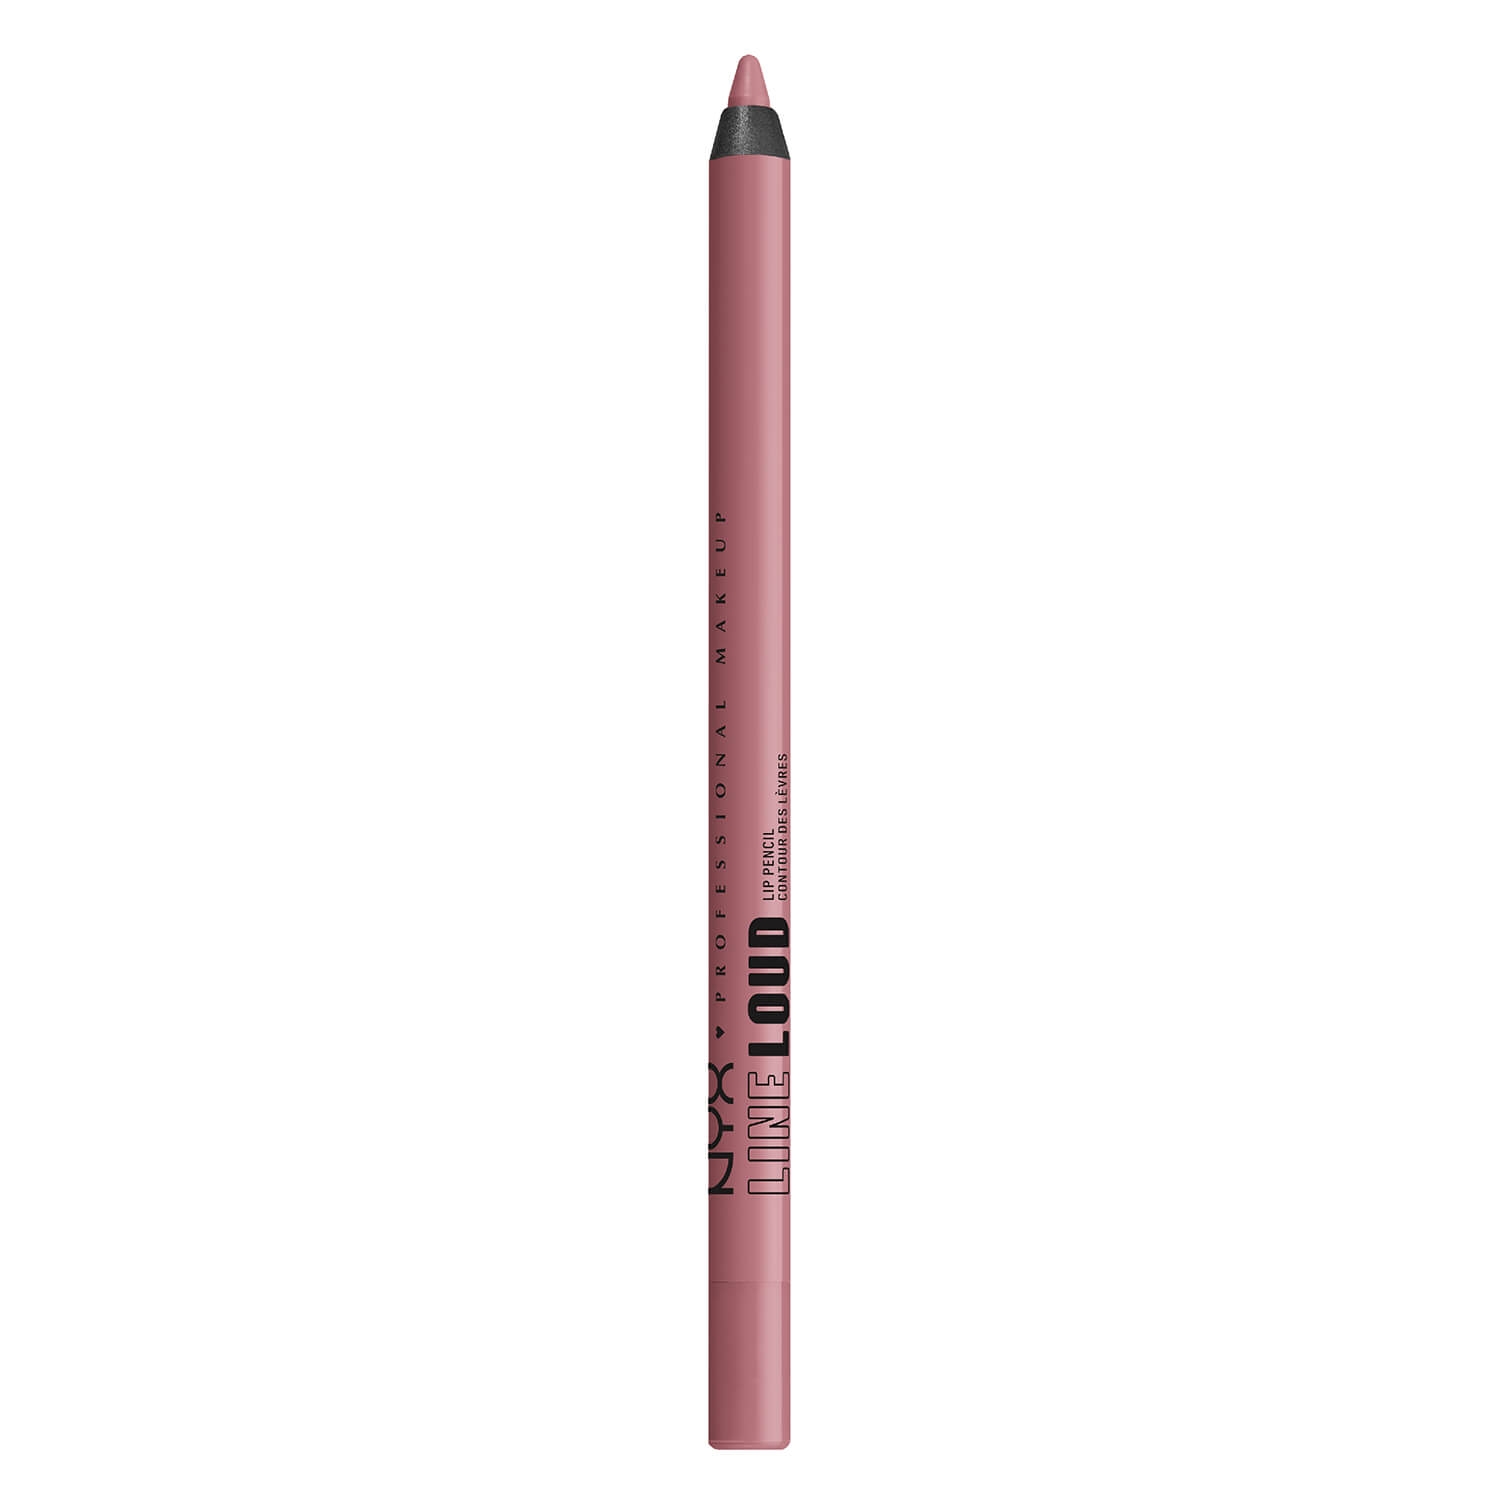 Produktbild von Line Loud Longwear Lip Pencil - 13 Fierce Flirt